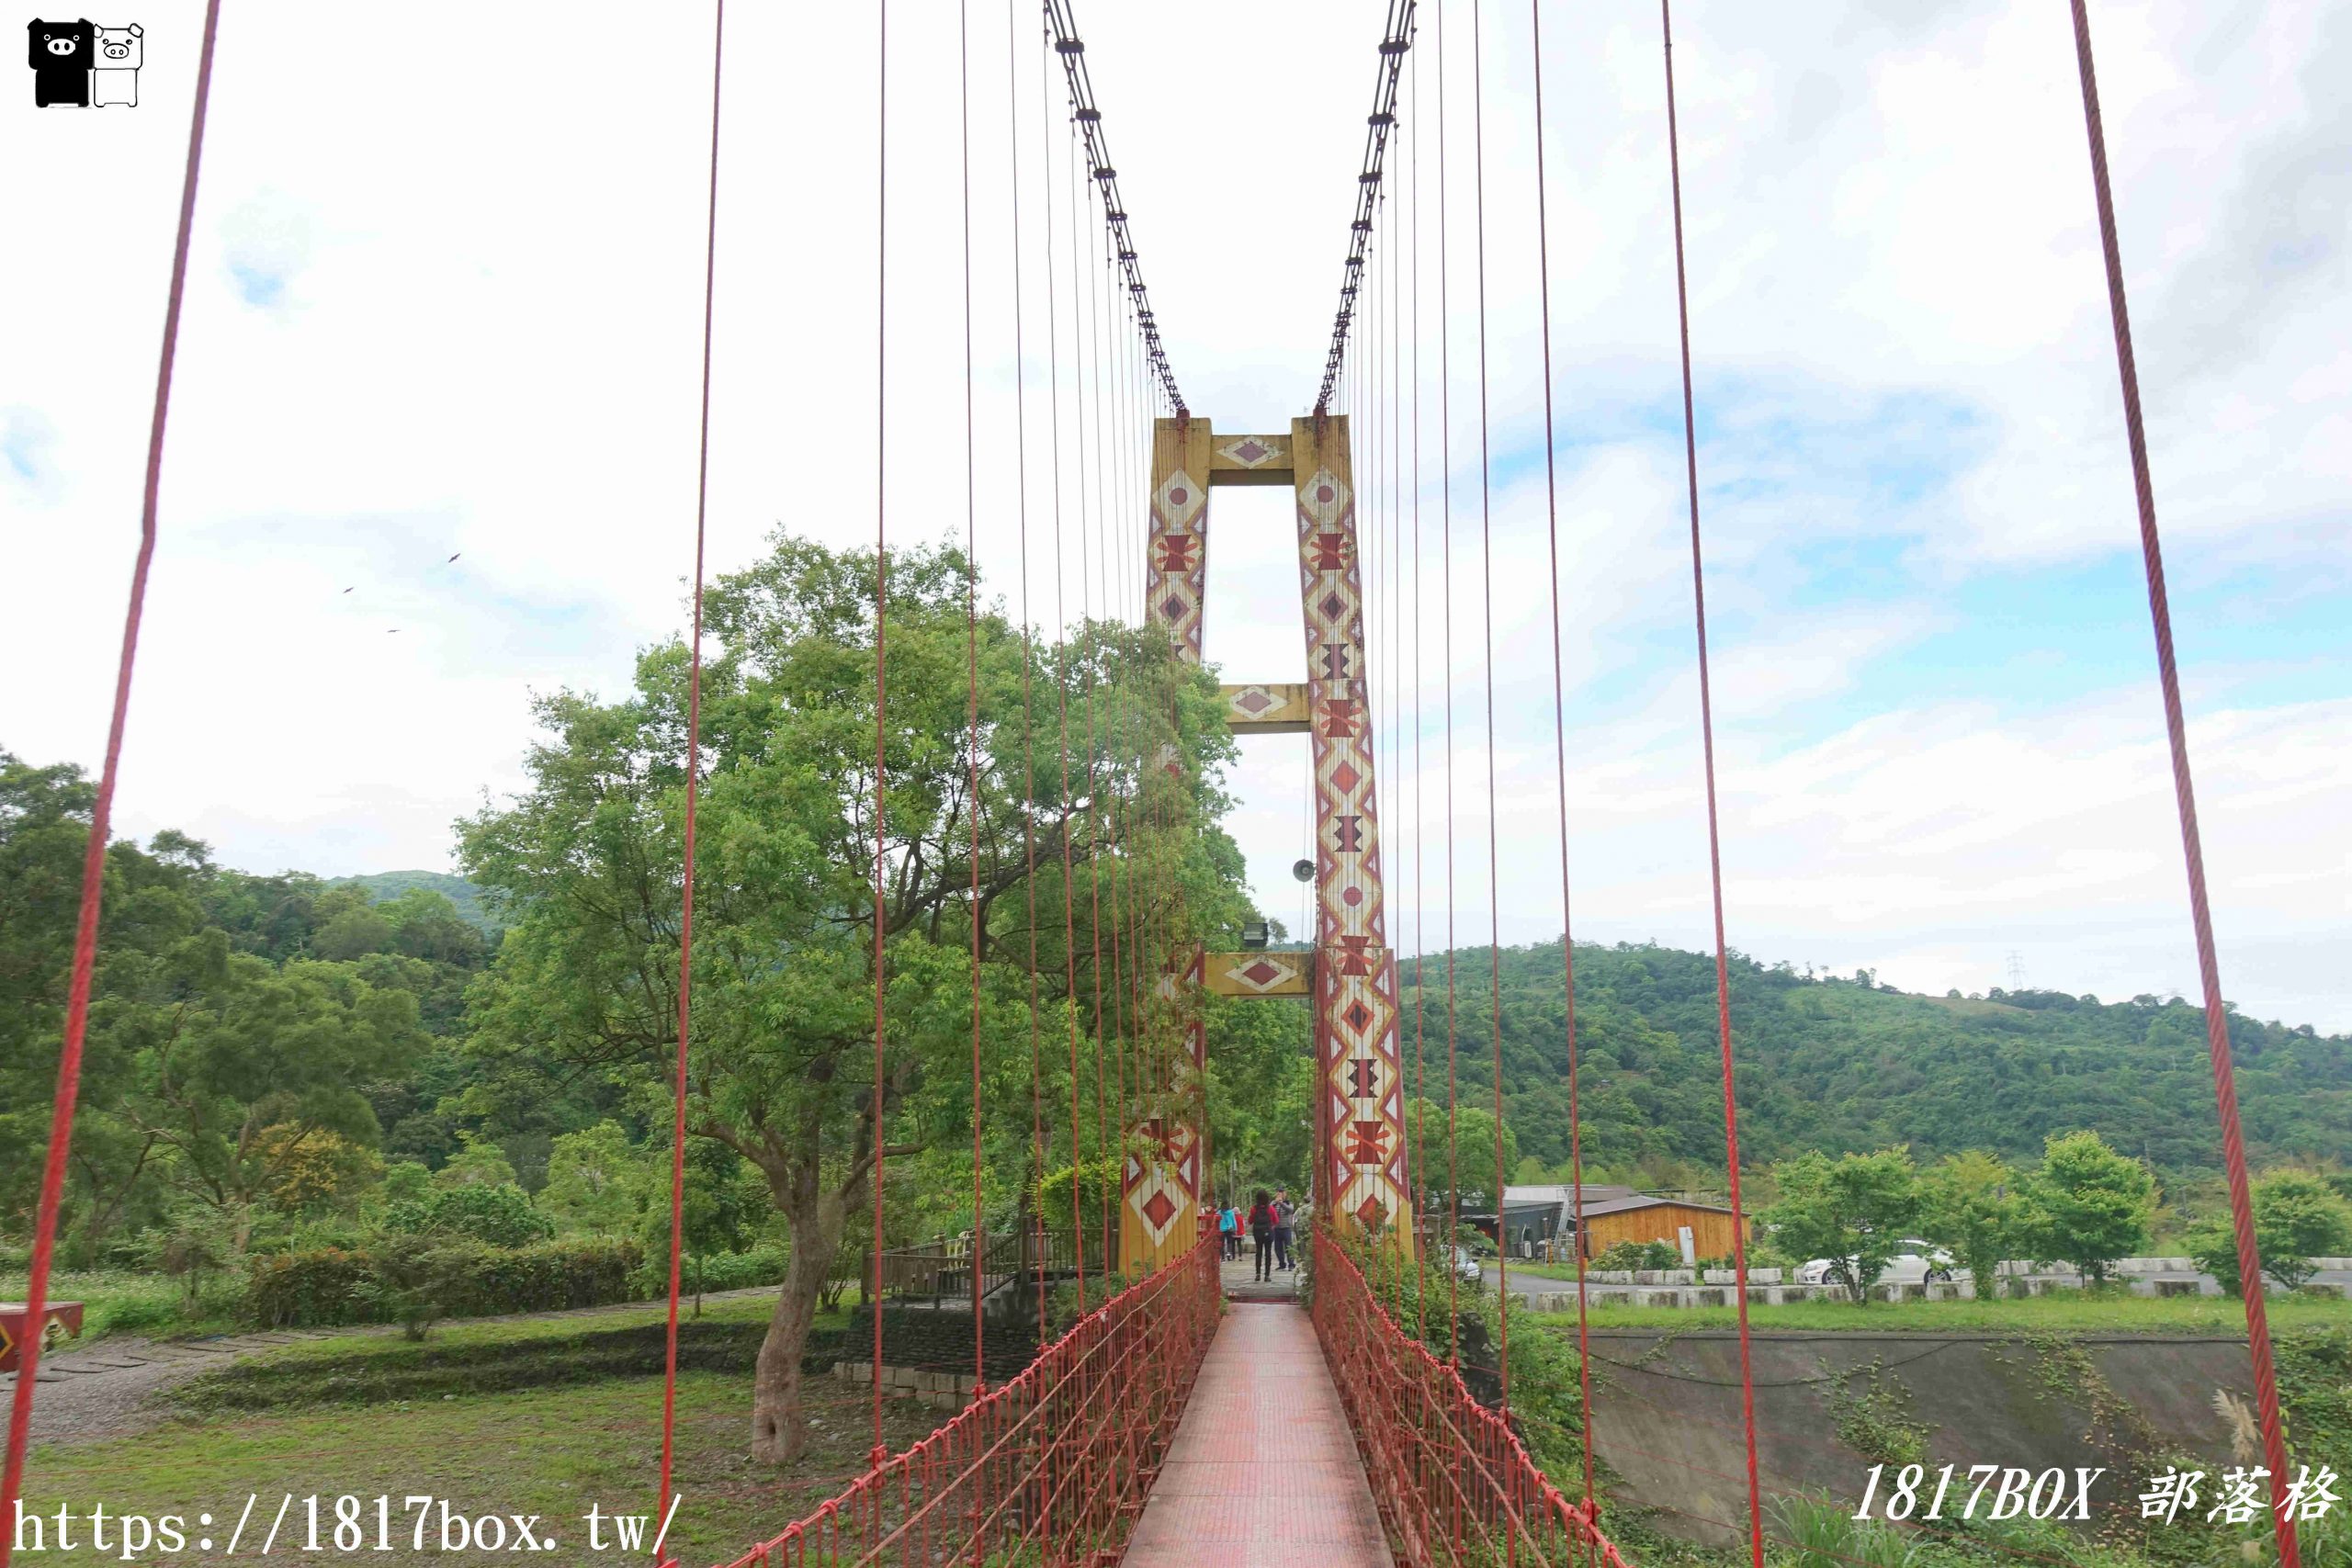 【宜蘭。大同】寒溪吊橋。宜蘭縣最長、最美的鋼索吊橋